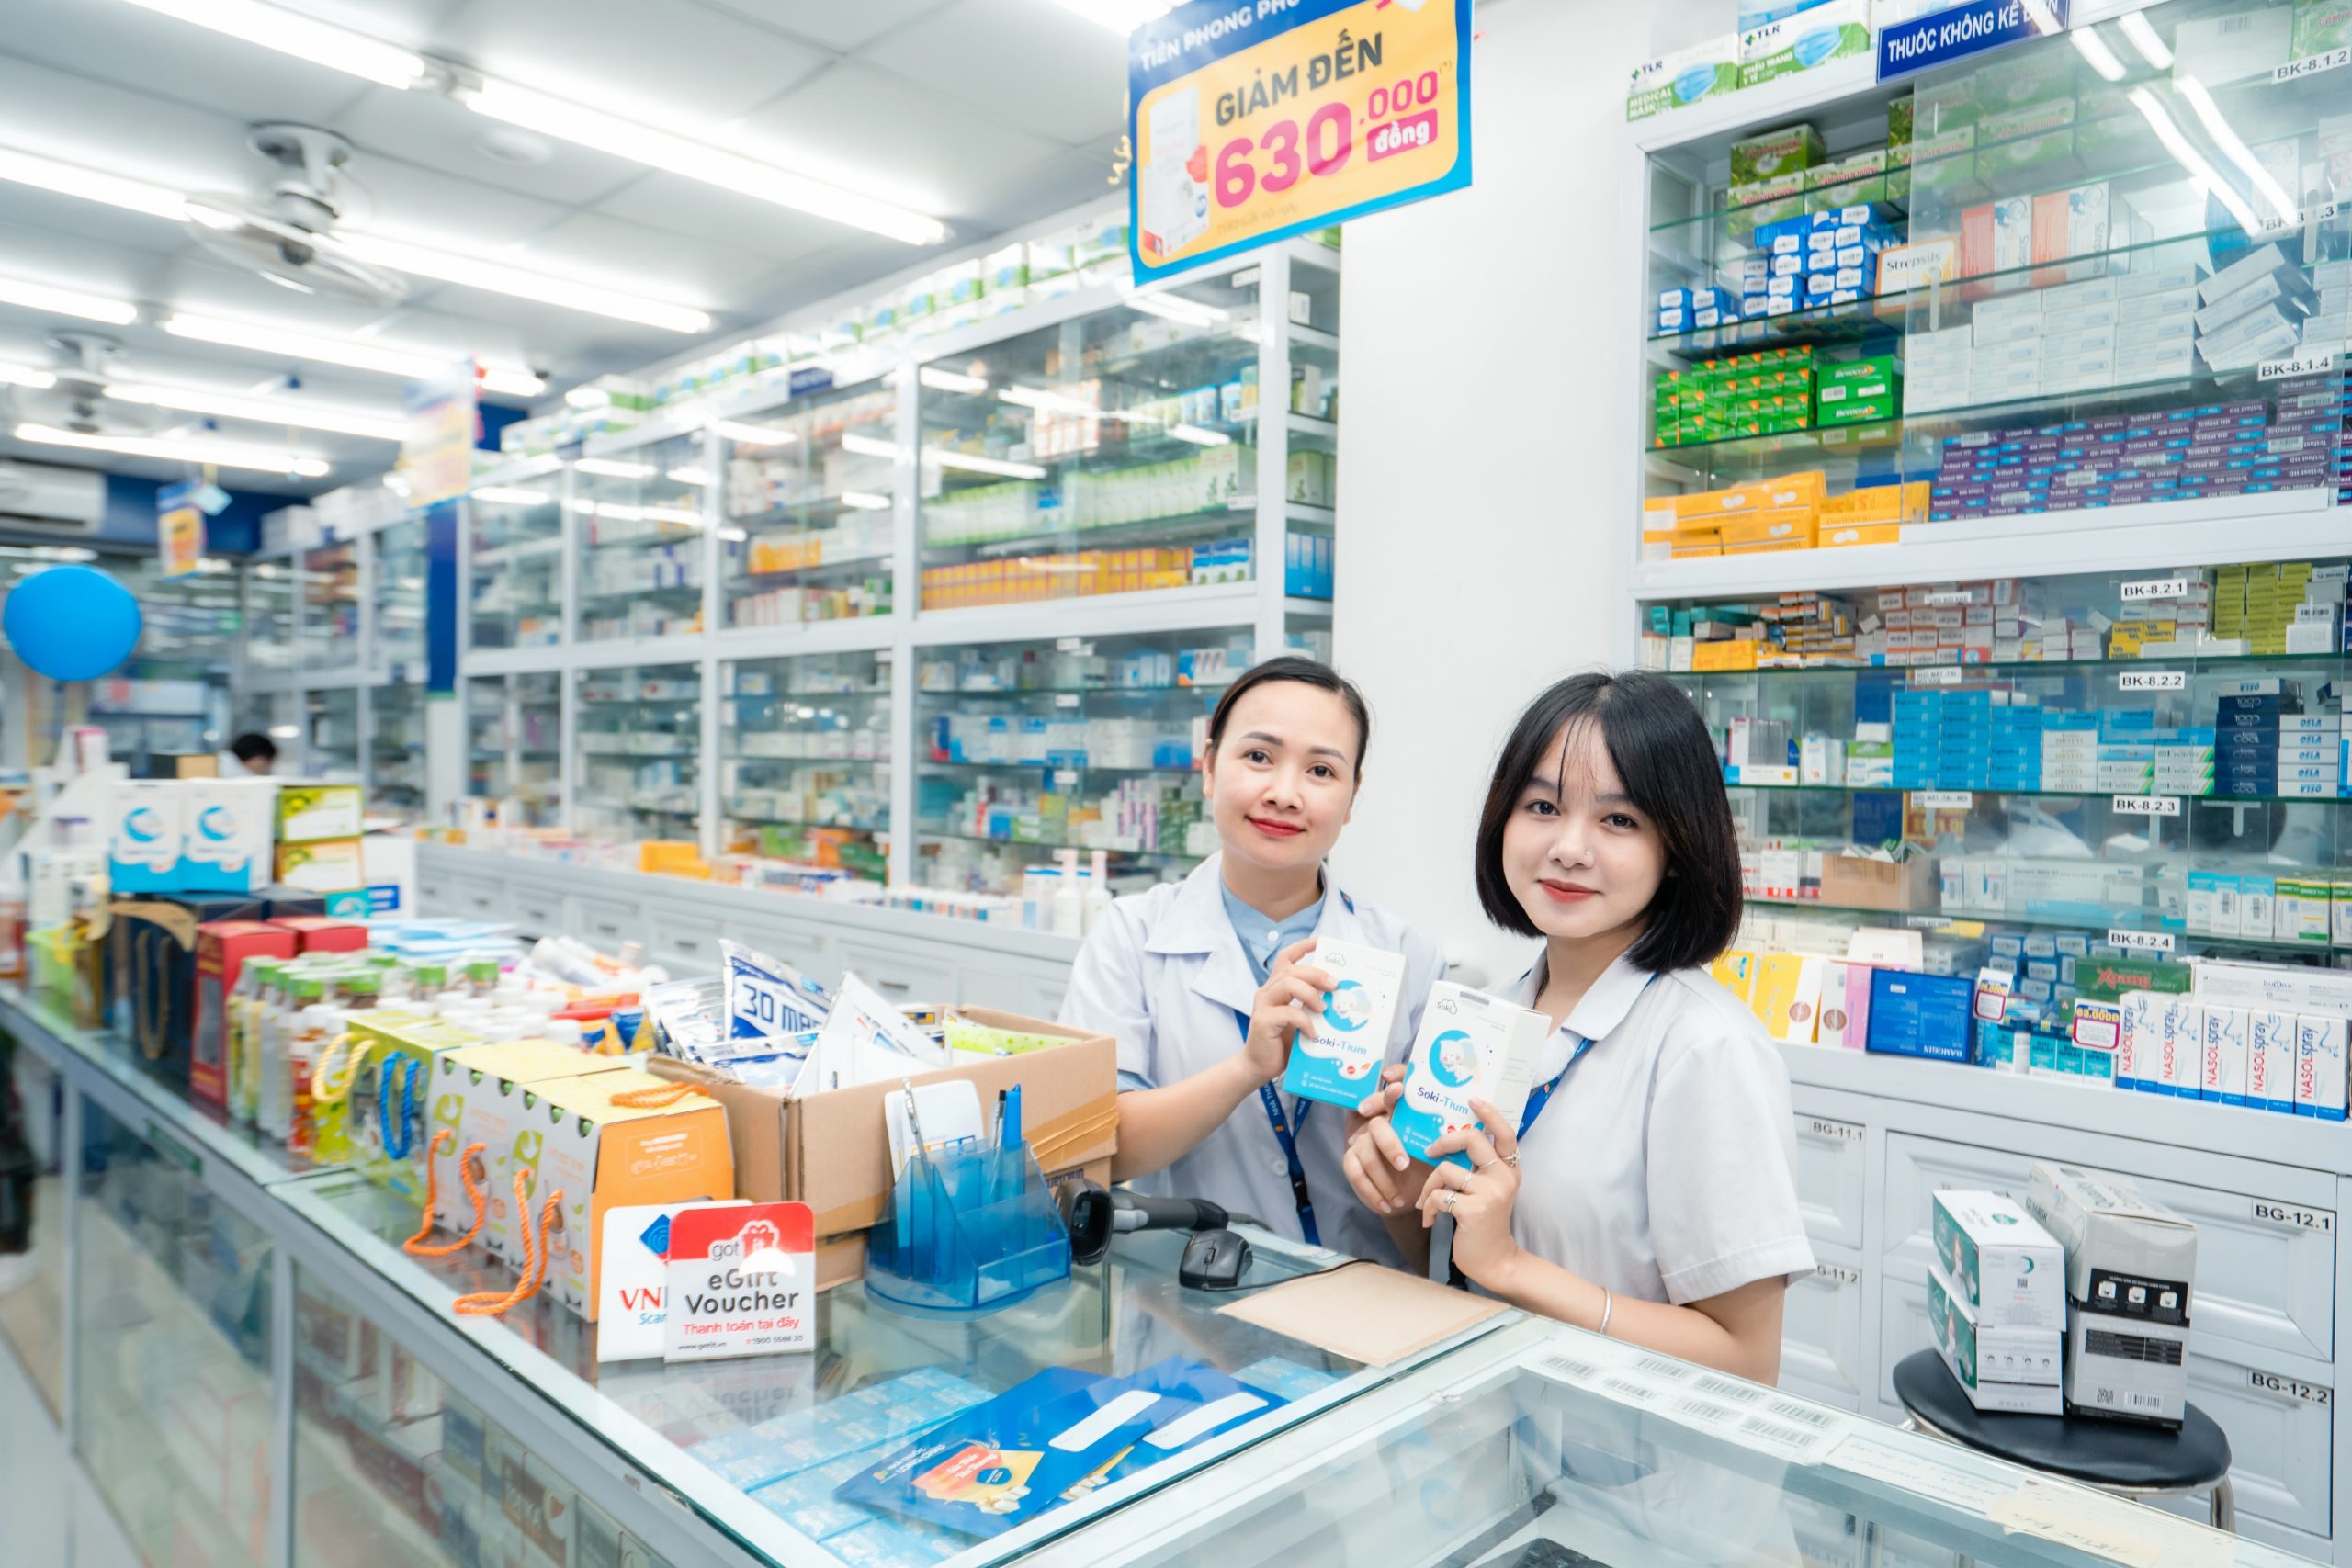 Soki Tium hợp tác với chuỗi nhà thuốc Long Châu, đem đến cho bé sản phẩm chăm sóc giấc ngủ số 1 Việt Nam